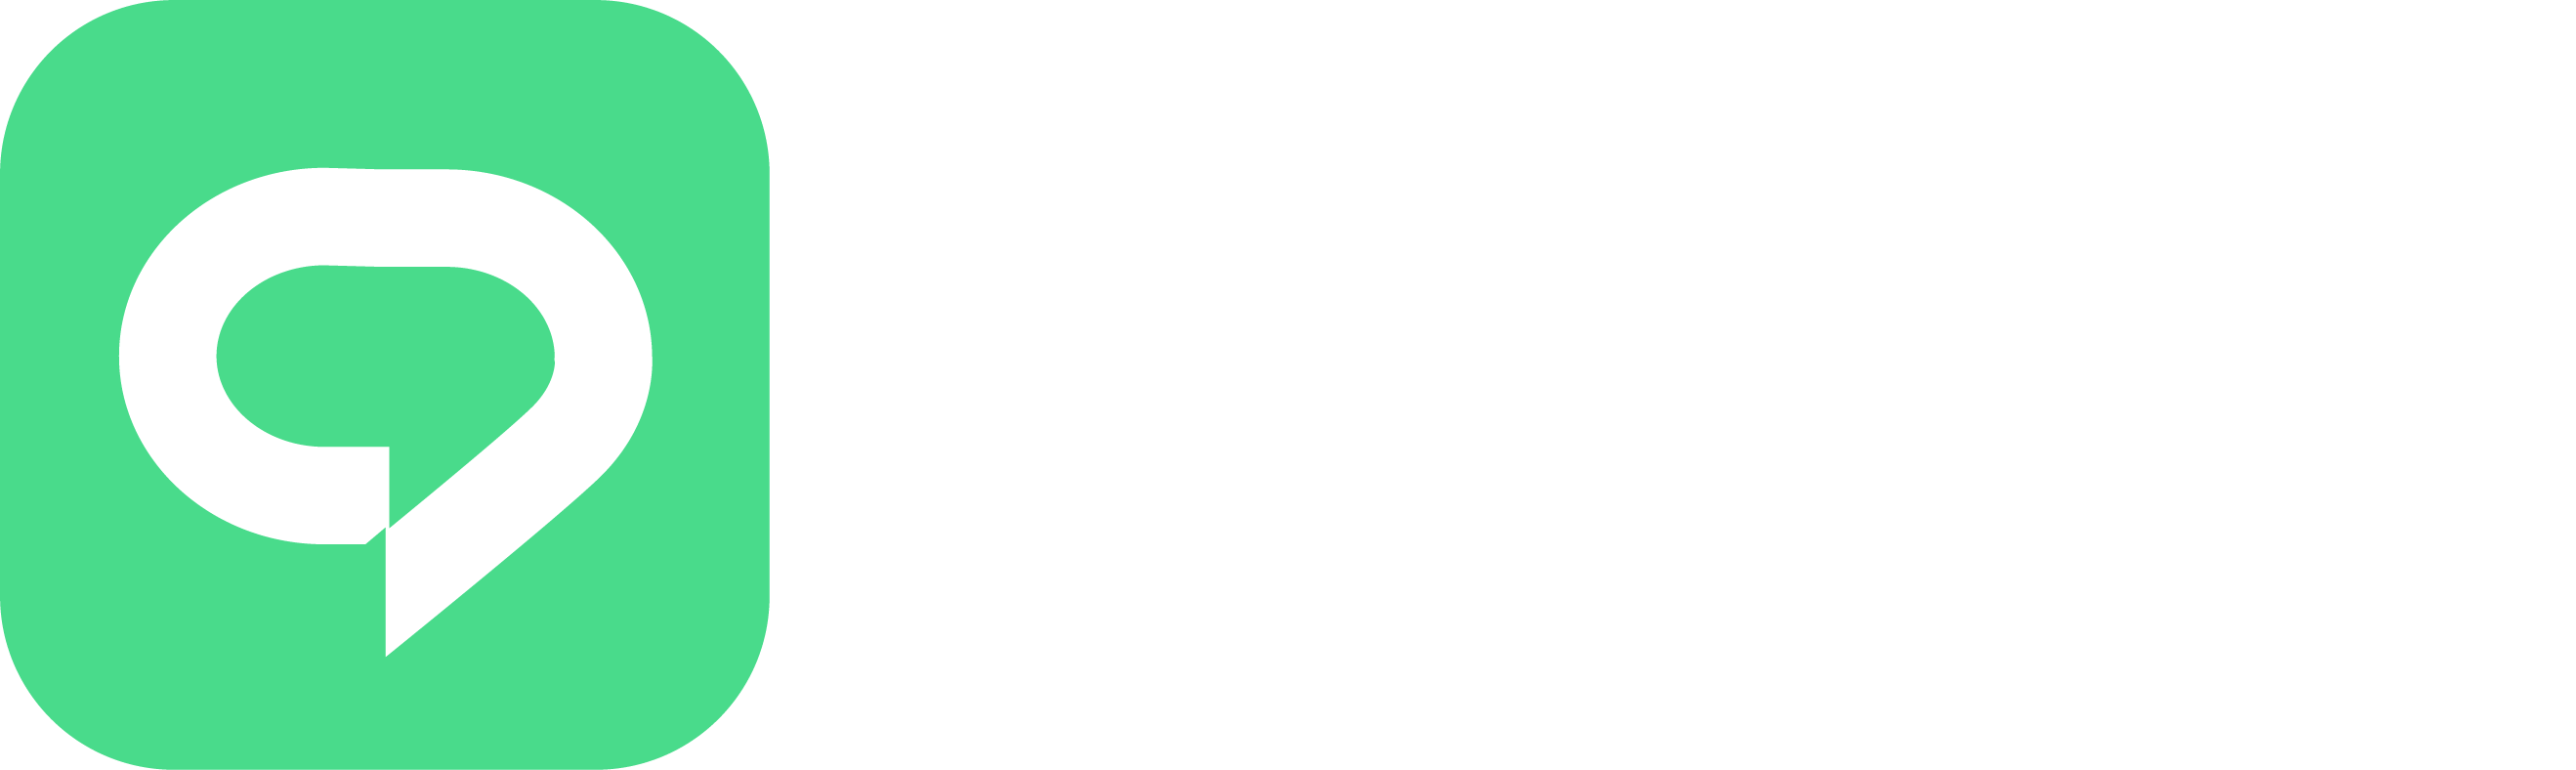 chatfy